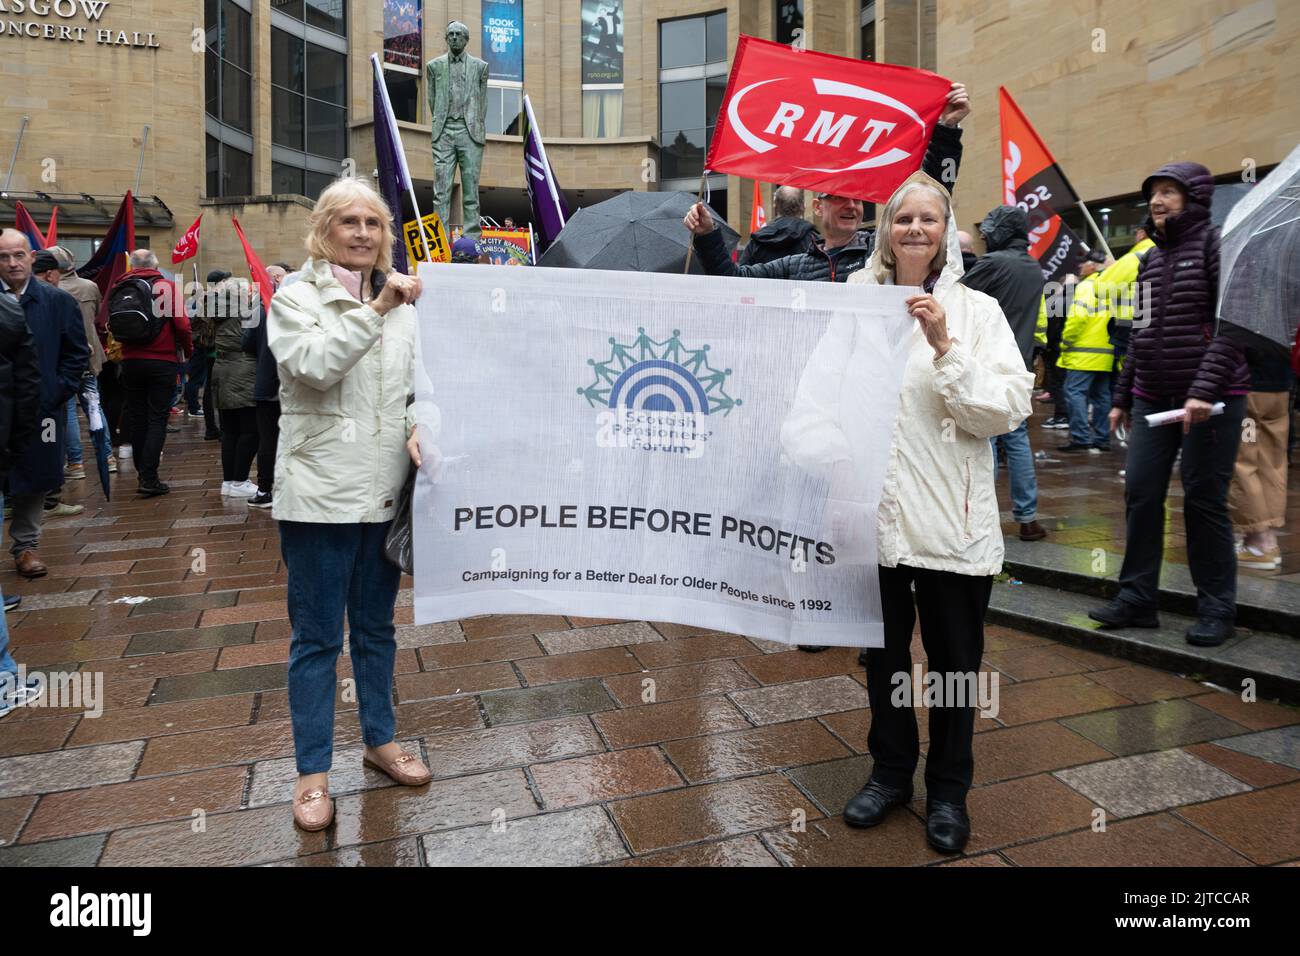 Foro Escocés de Pensionistas Pancarta de la gente antes de los beneficios en manos de manifestantes en la huelga sindical conjunta, Glasgow, Escocia, Reino Unido 26 de agosto de 2022 Foto de stock